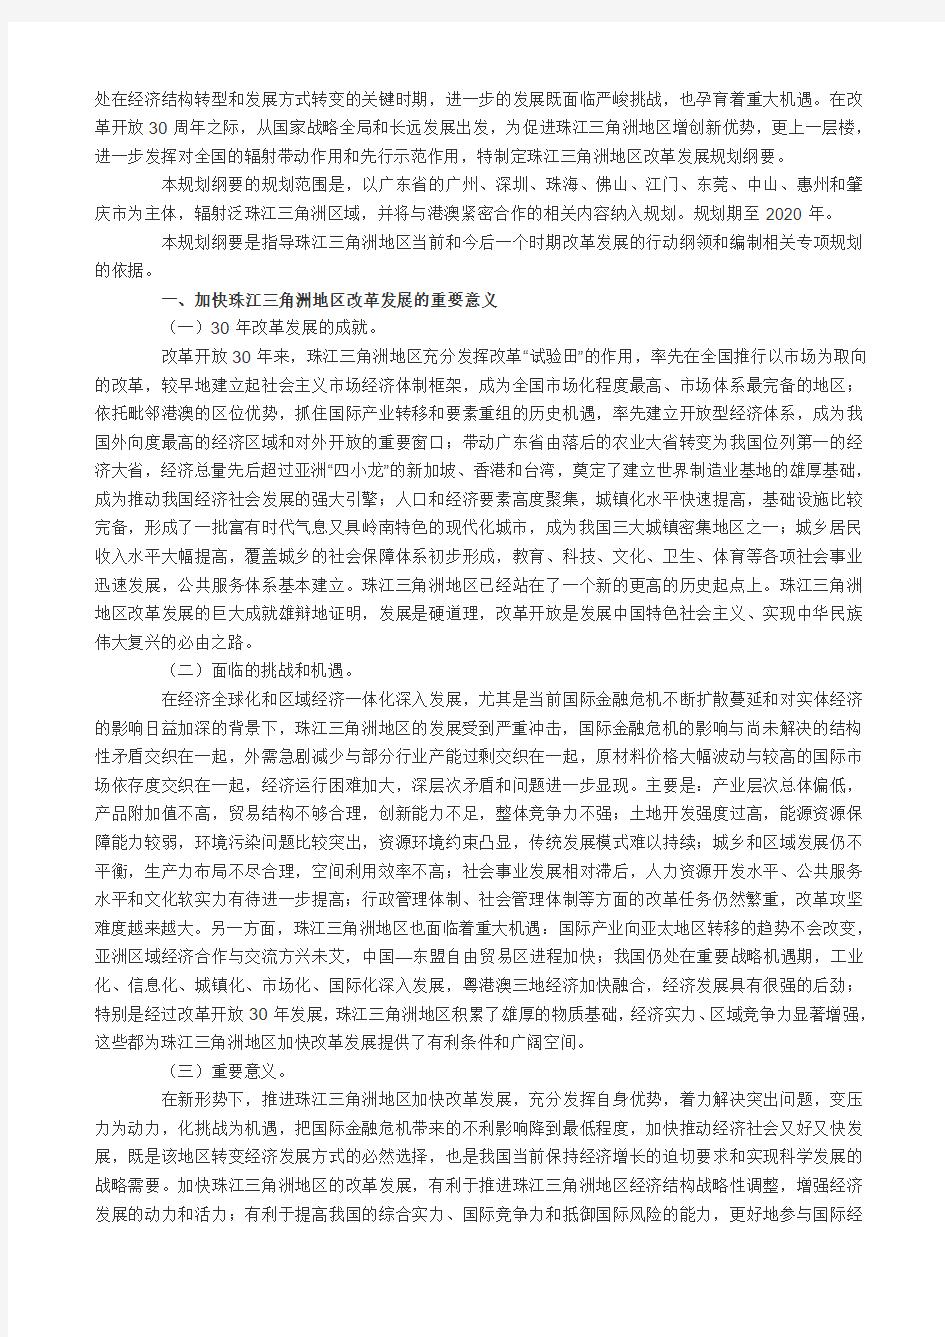 珠江三角洲地区改革发展规划纲要(2008-2020年)